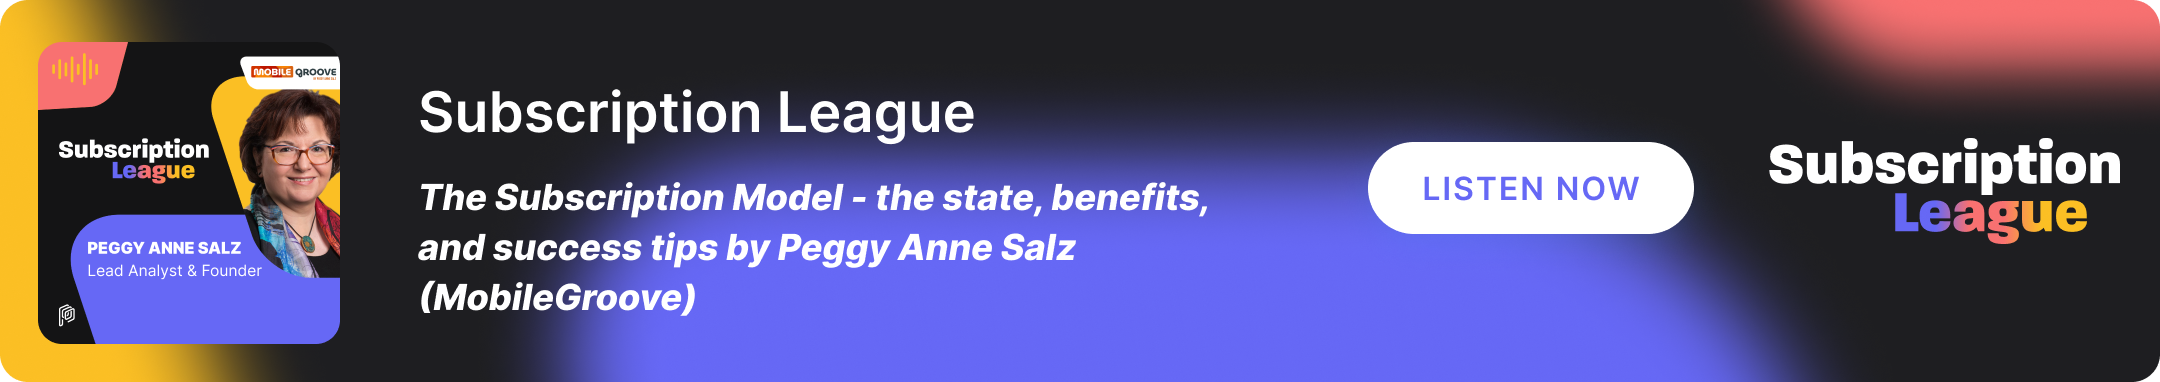 Subscription League Podcast - Peggy Anne Salz